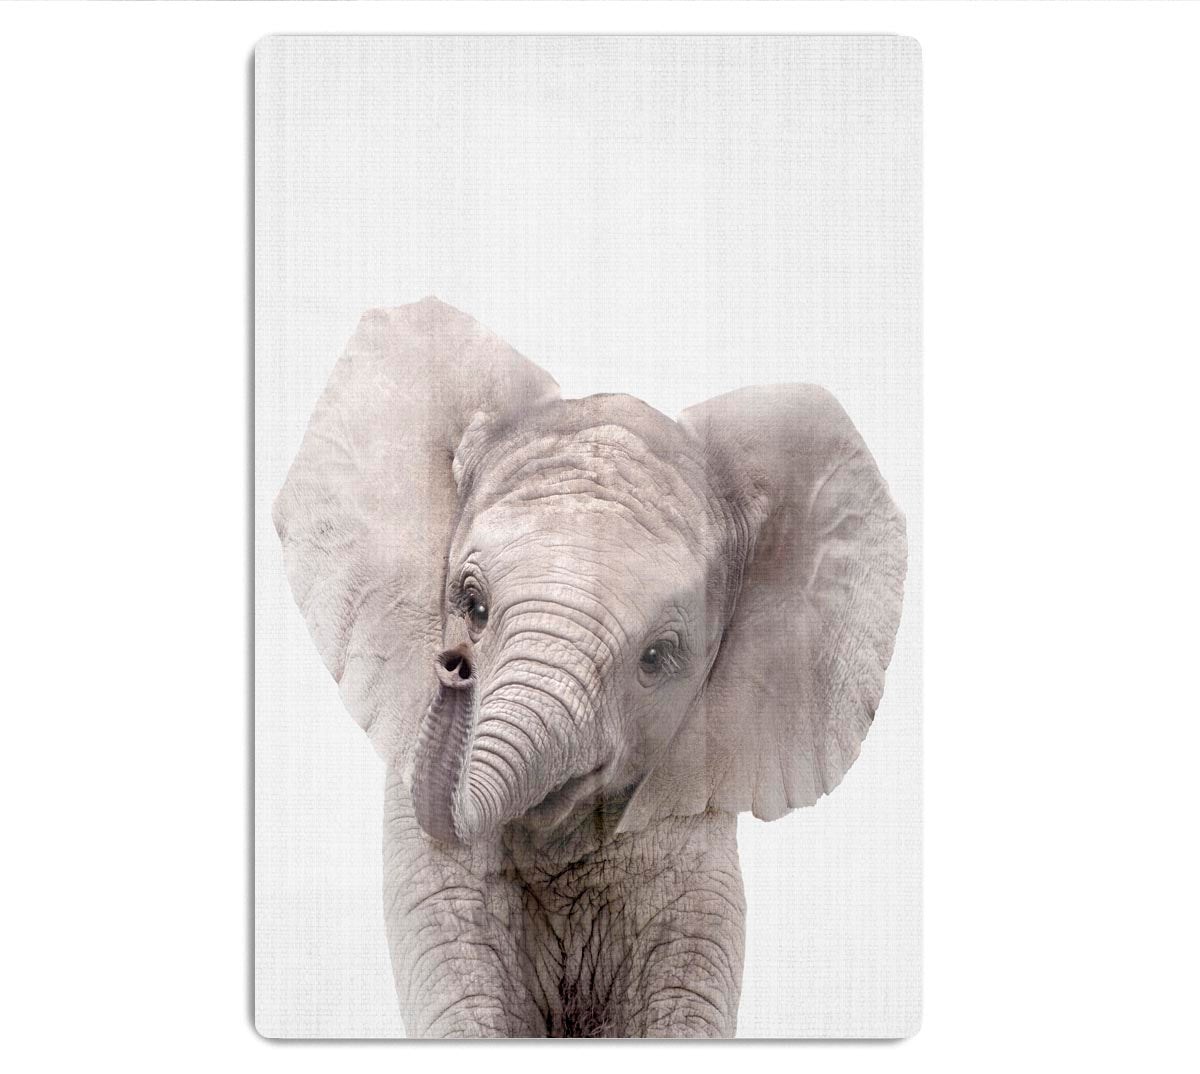 Peekaboo Baby Elephant Acrylic Block - 1x - 1